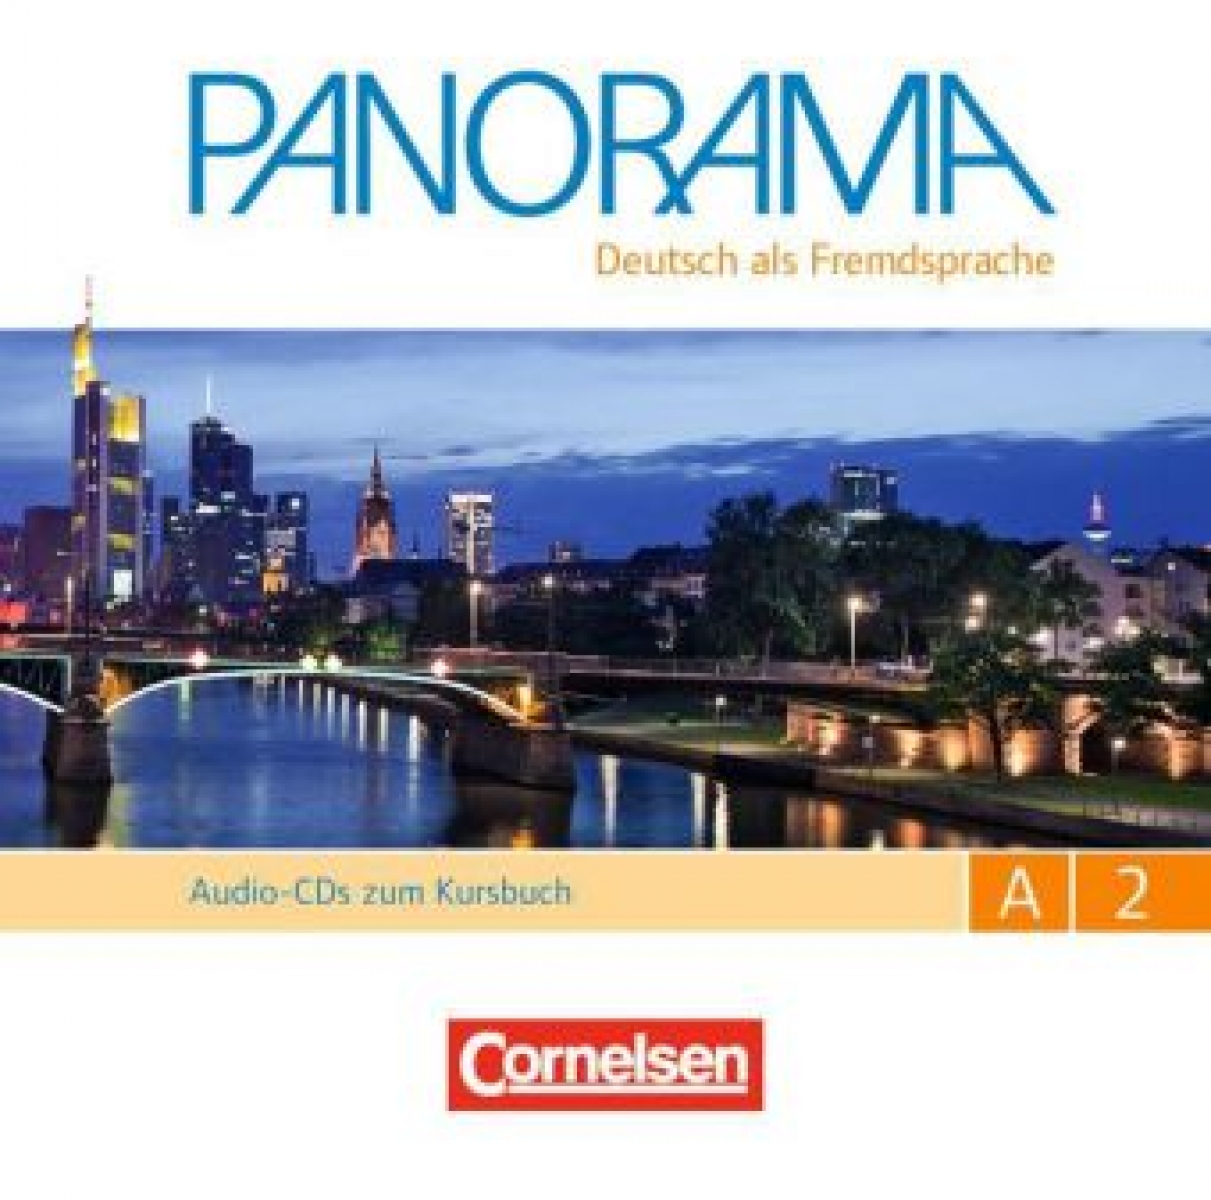 Finster Andrea Panorama A2 Audio-CD zum Kursbuch 